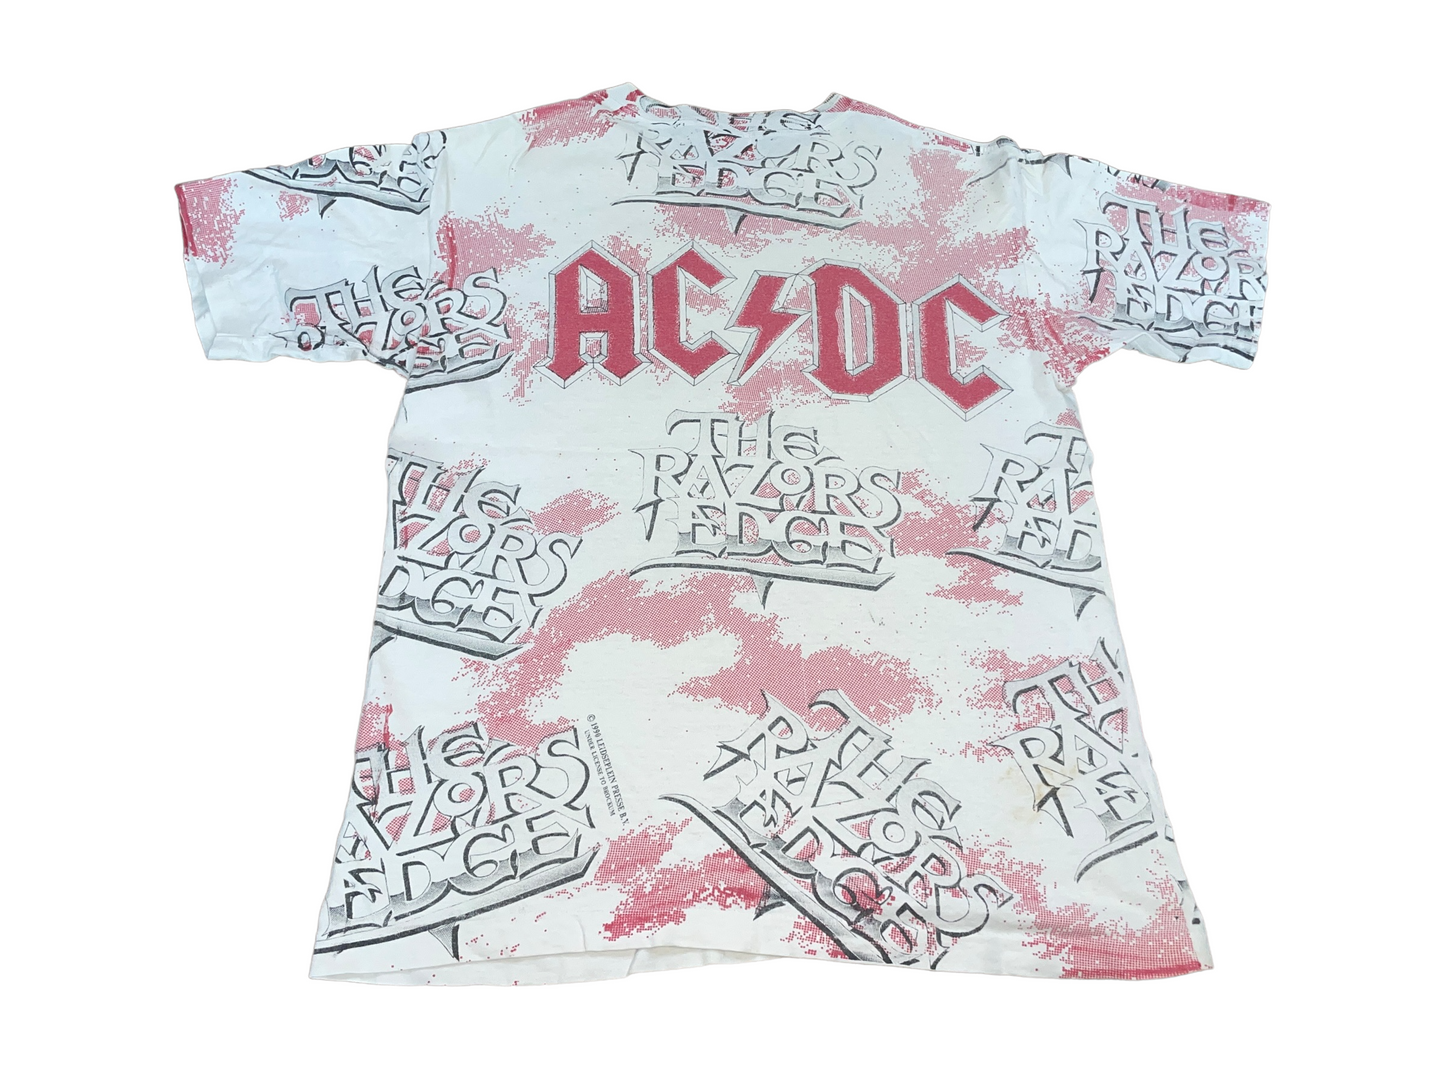 Vintage 1990 ACDC The Razor's Edge Shirt